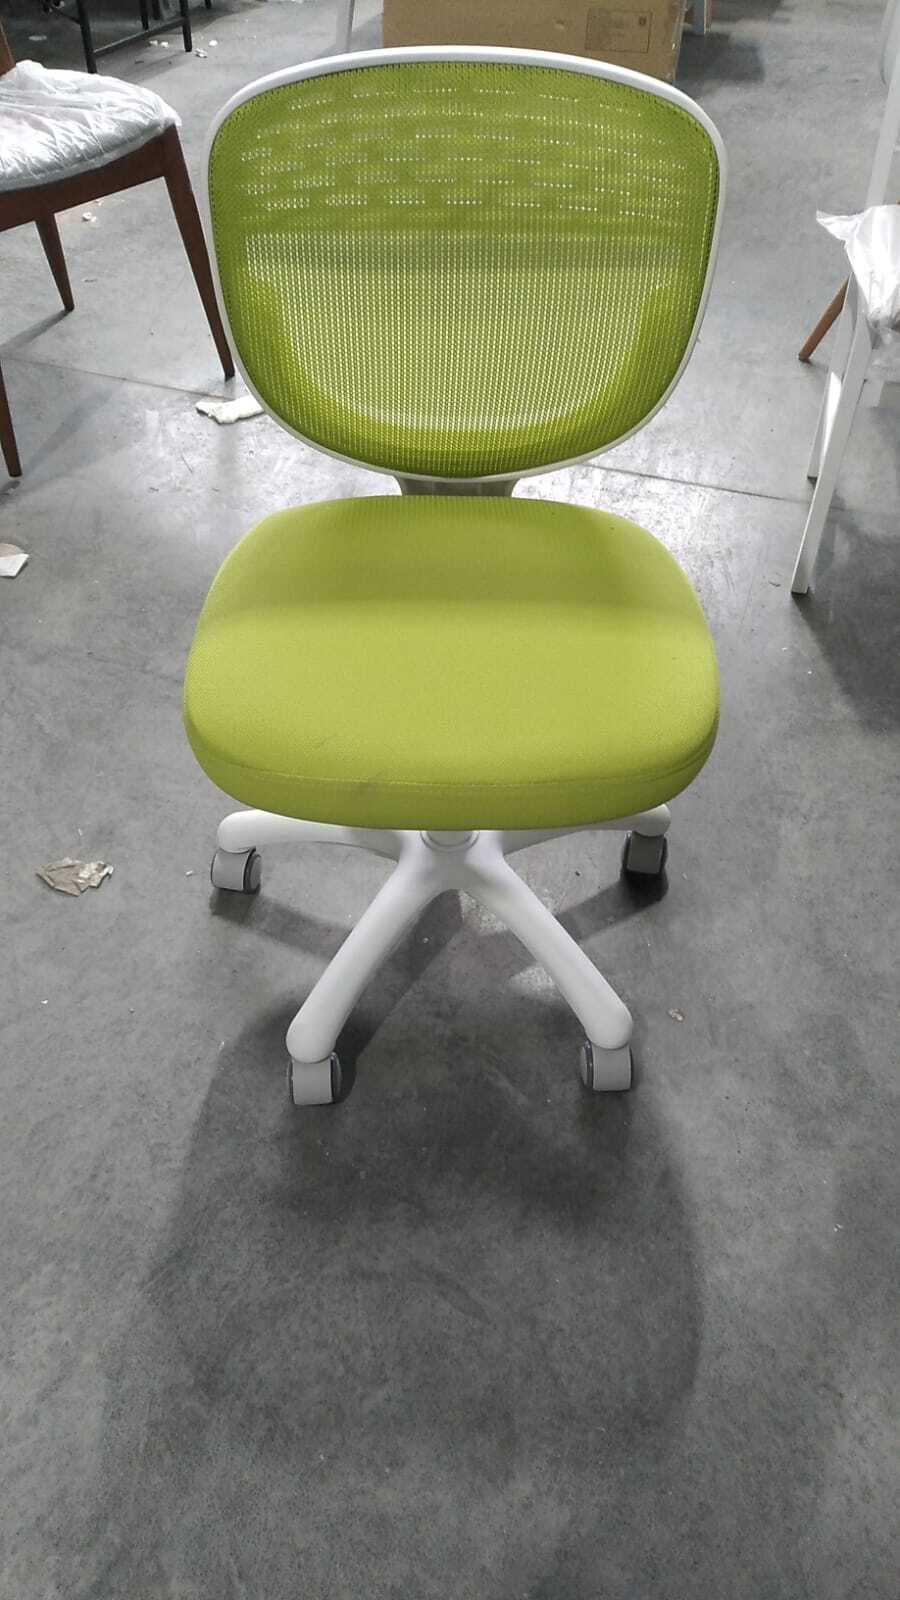 Кресло Junior M Green (зеленый)